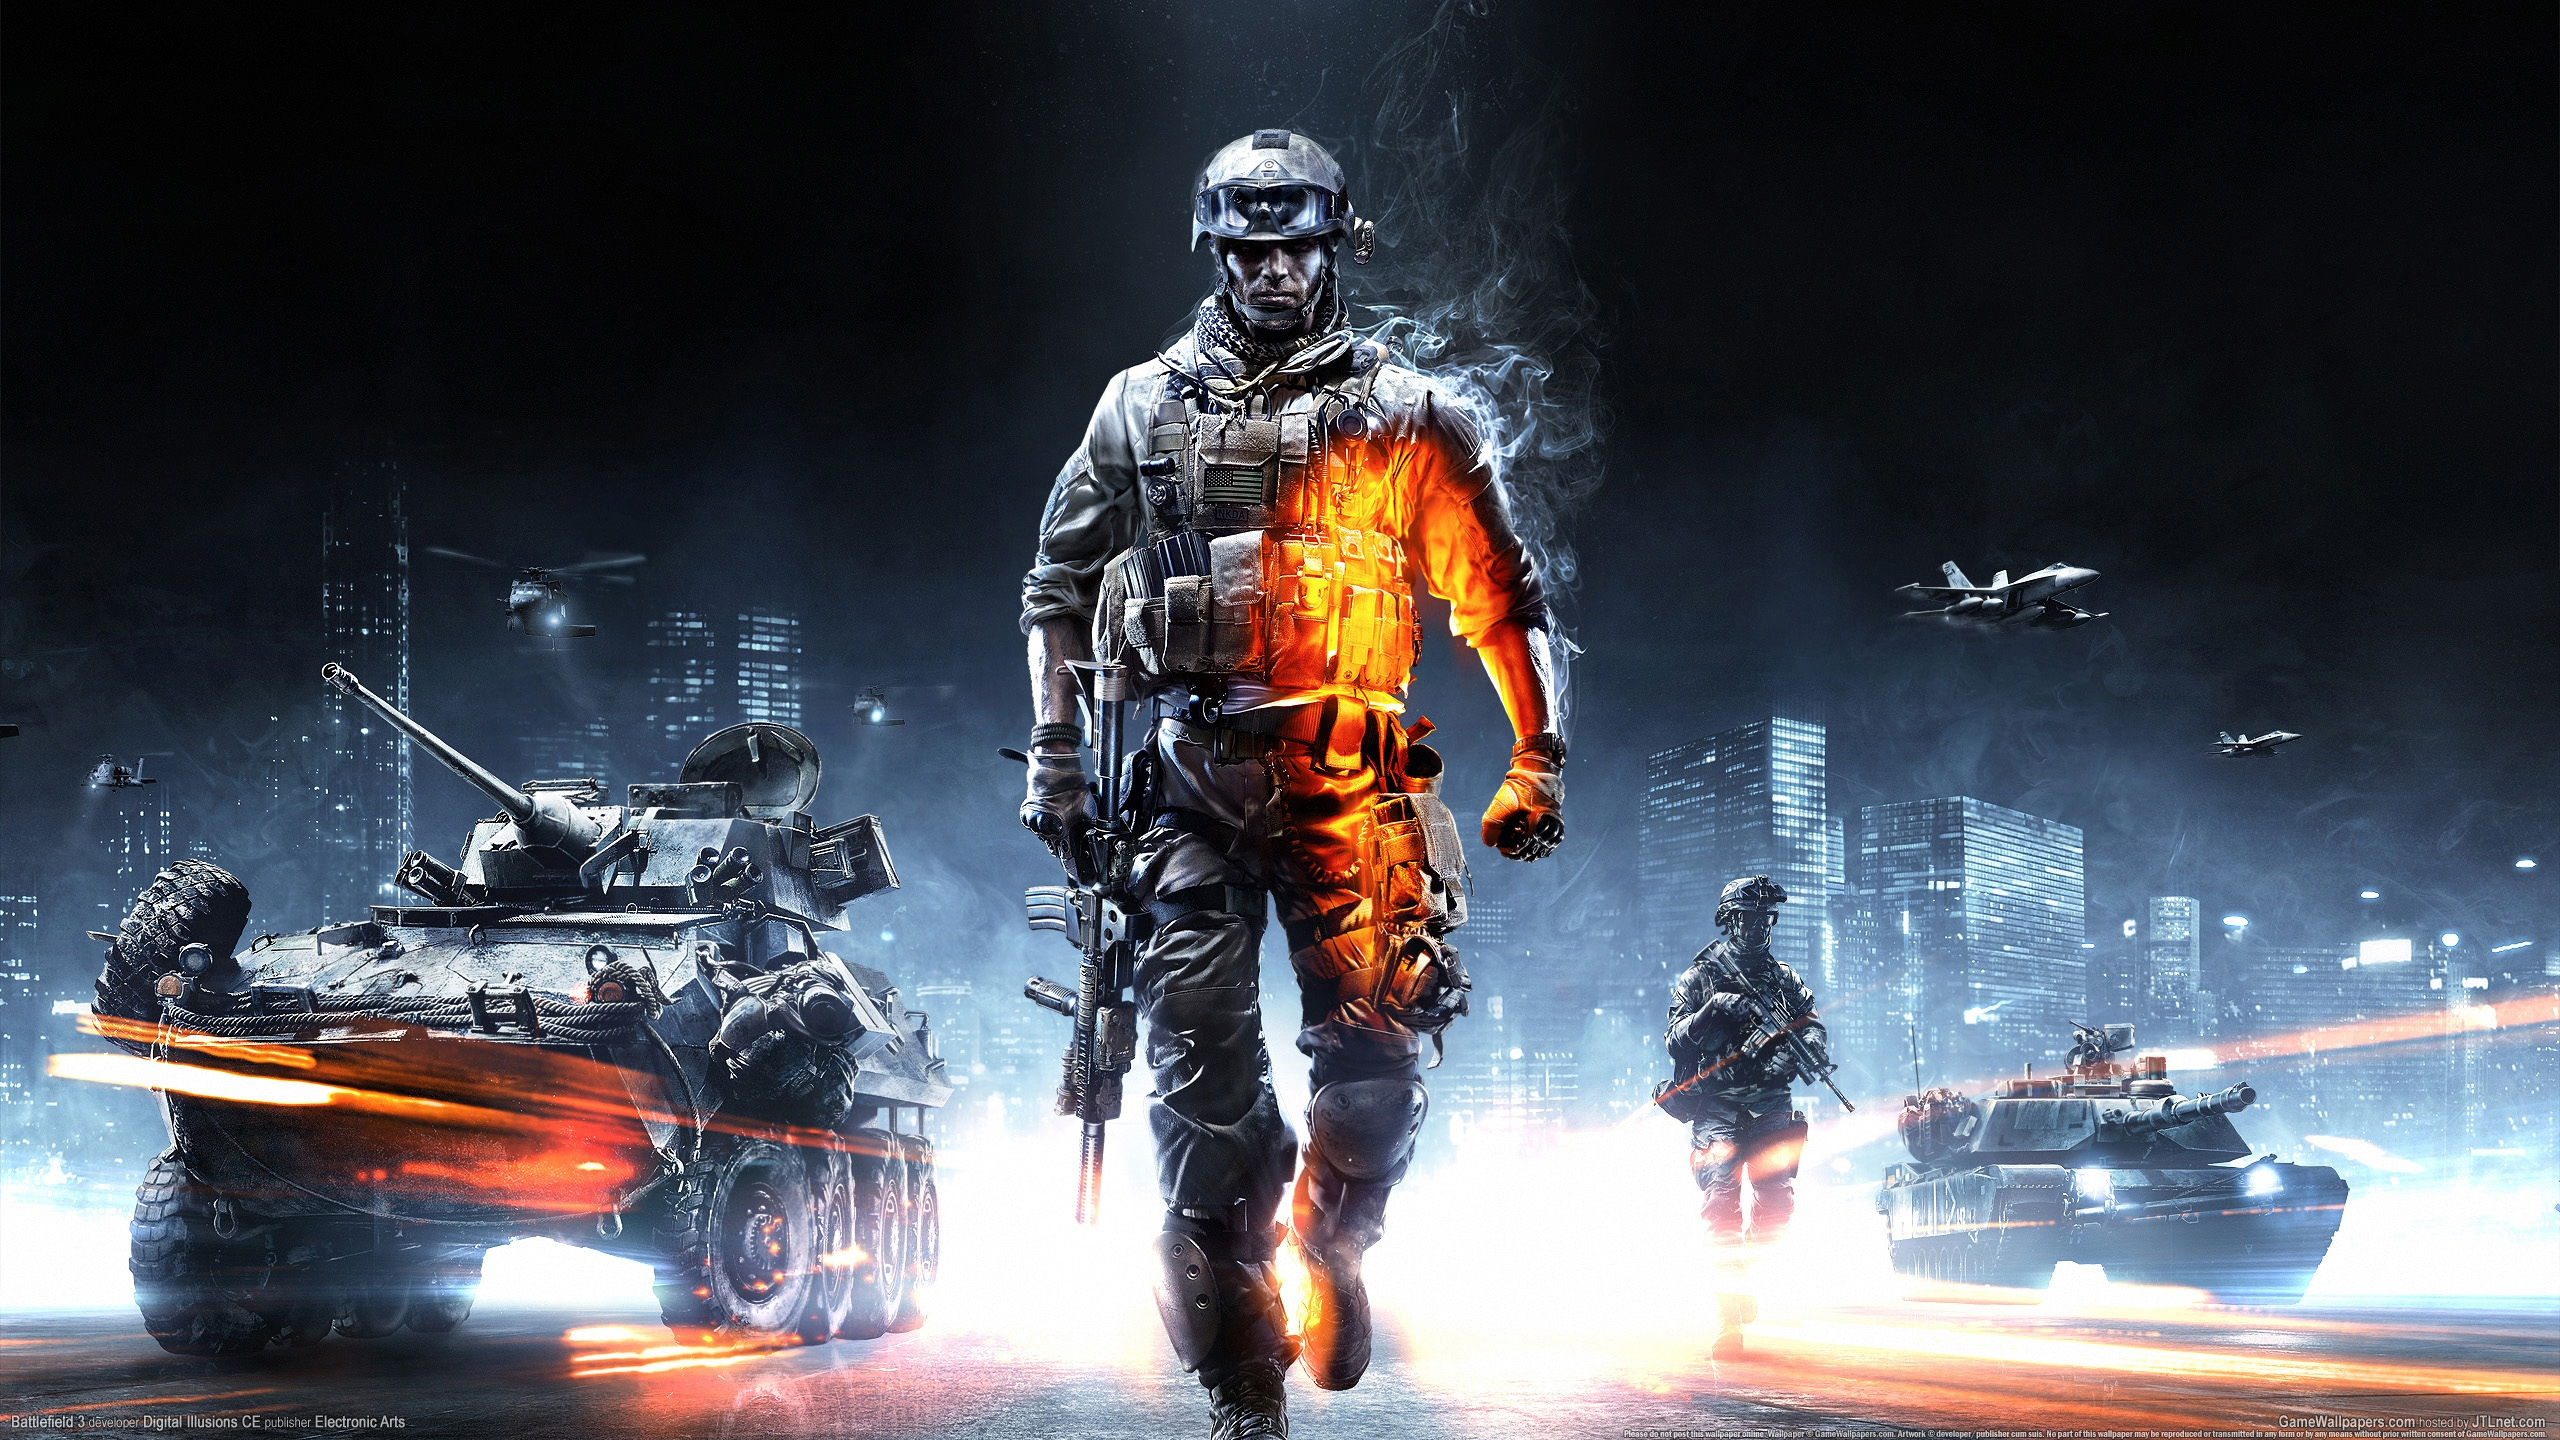 WYŁĄCZNIE – następna gra Battlefield firmy EA będzie zawierać także darmową grę Battle Royale